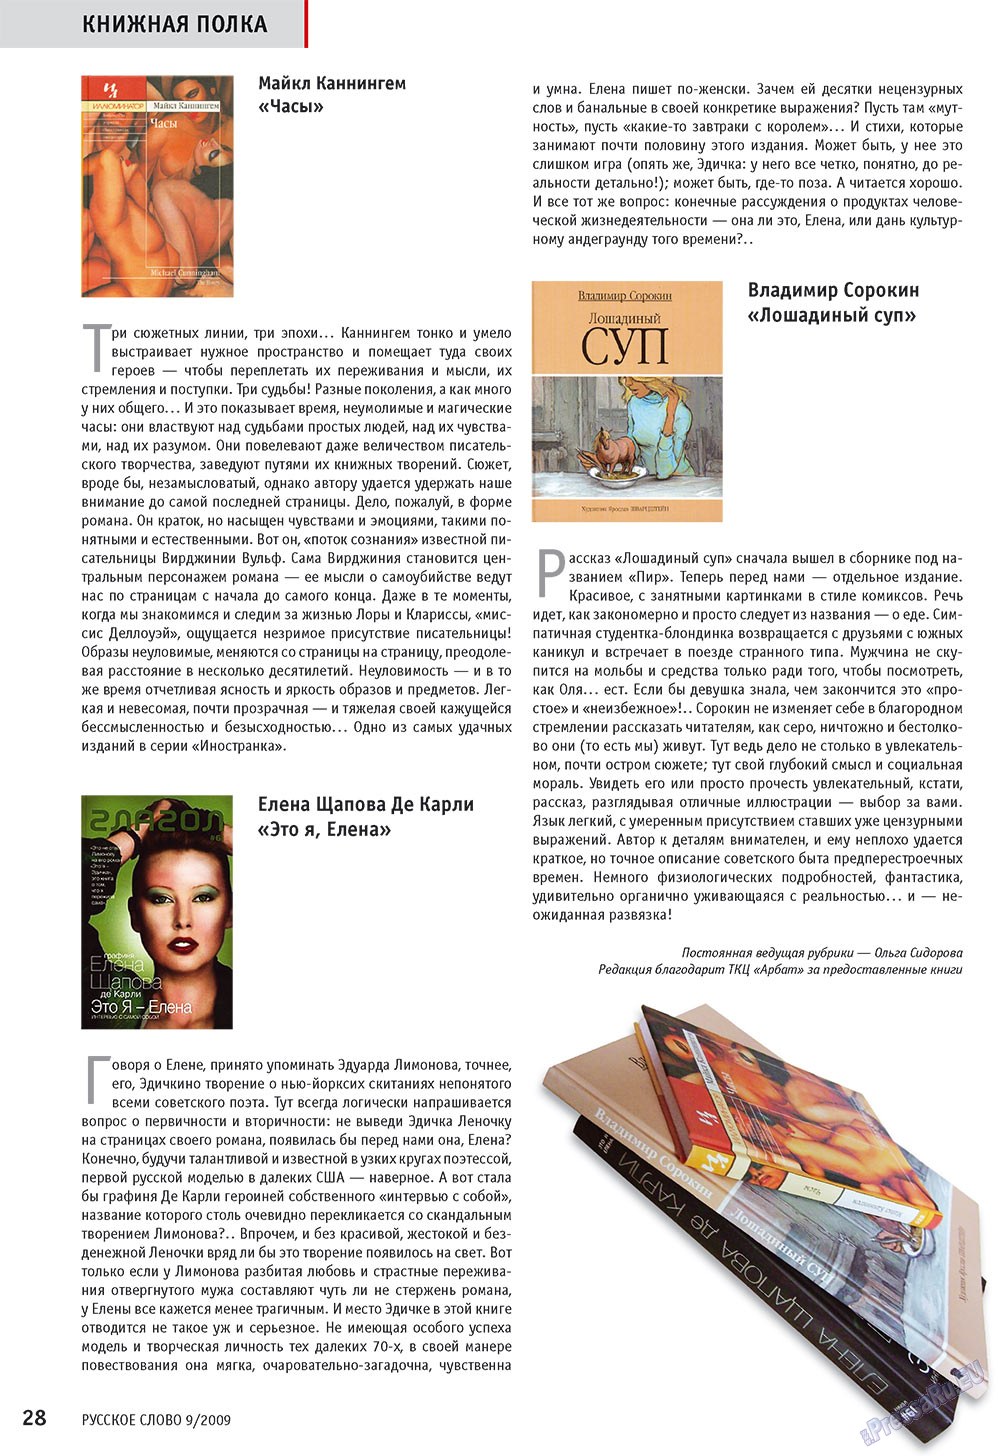 Русское слово, журнал. 2009 №9 стр.30